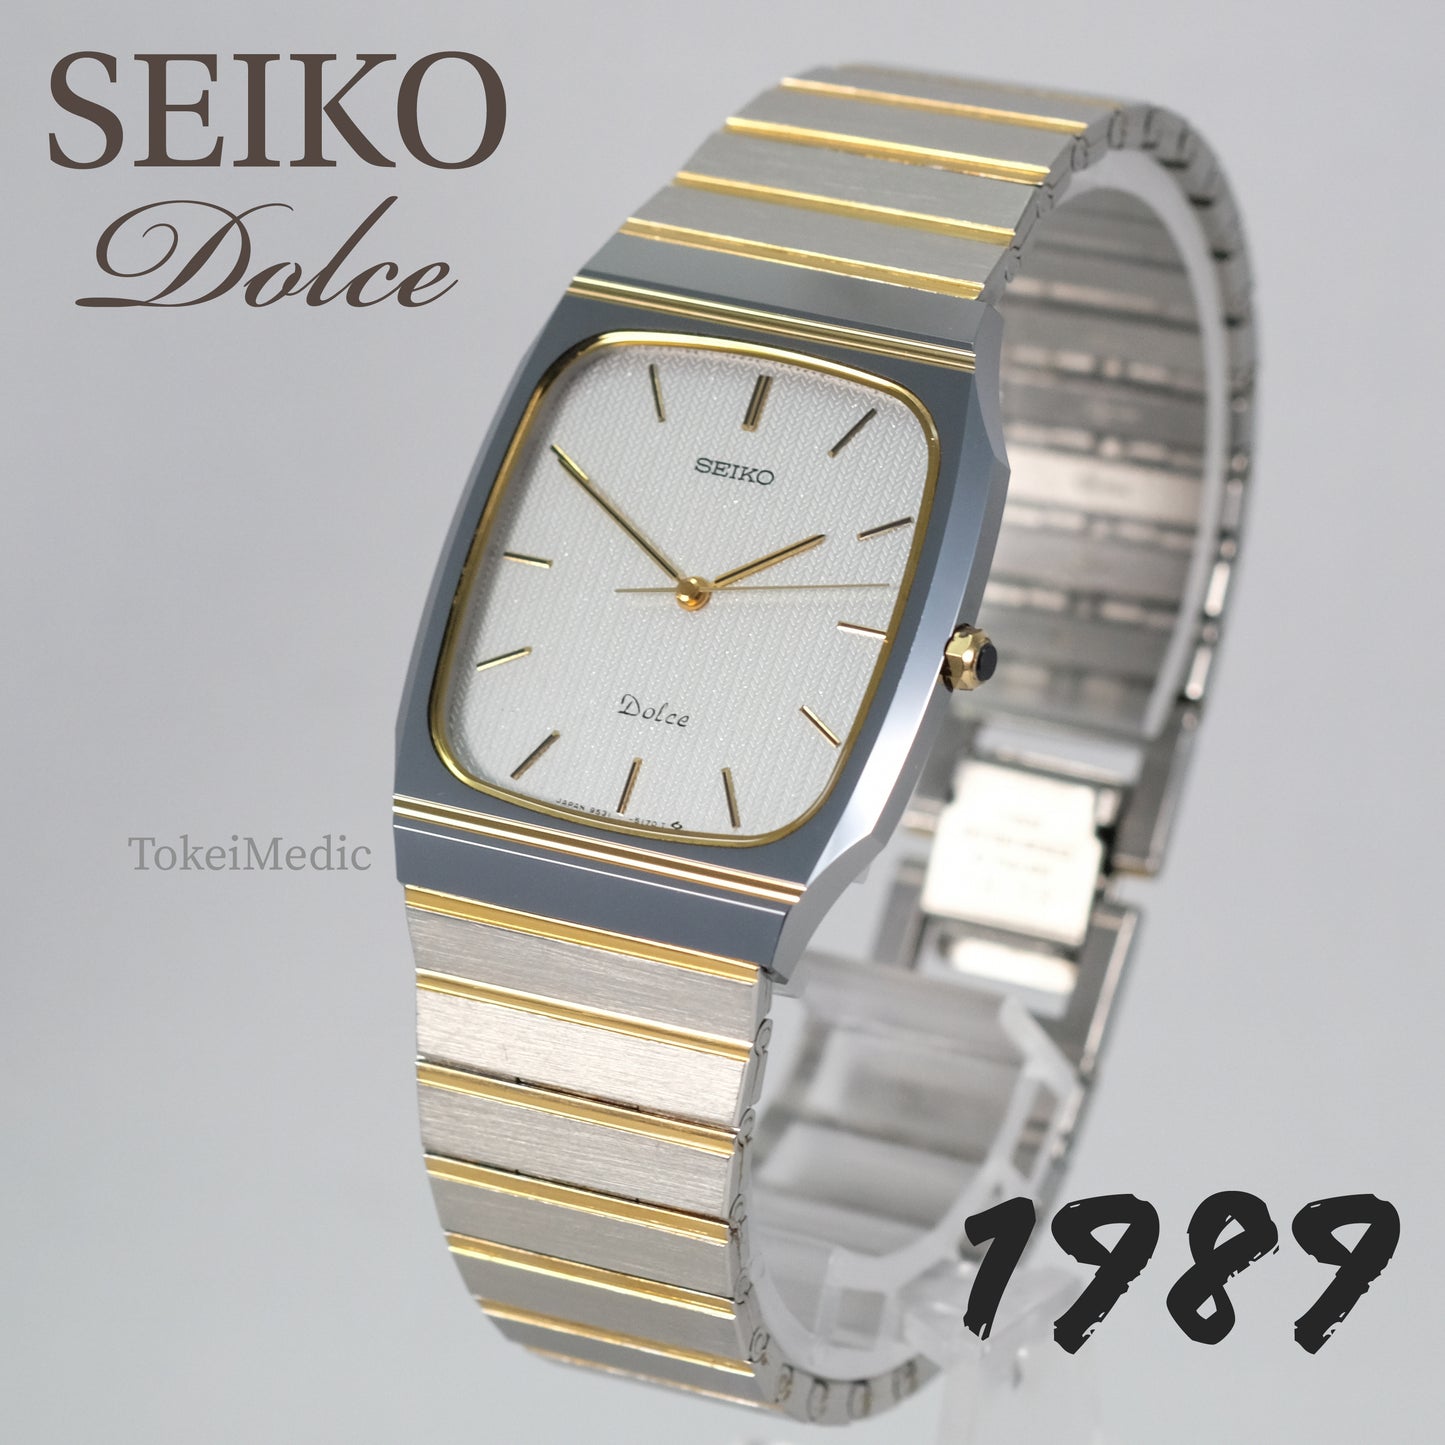 1989 Seiko Dolce 9531-5140